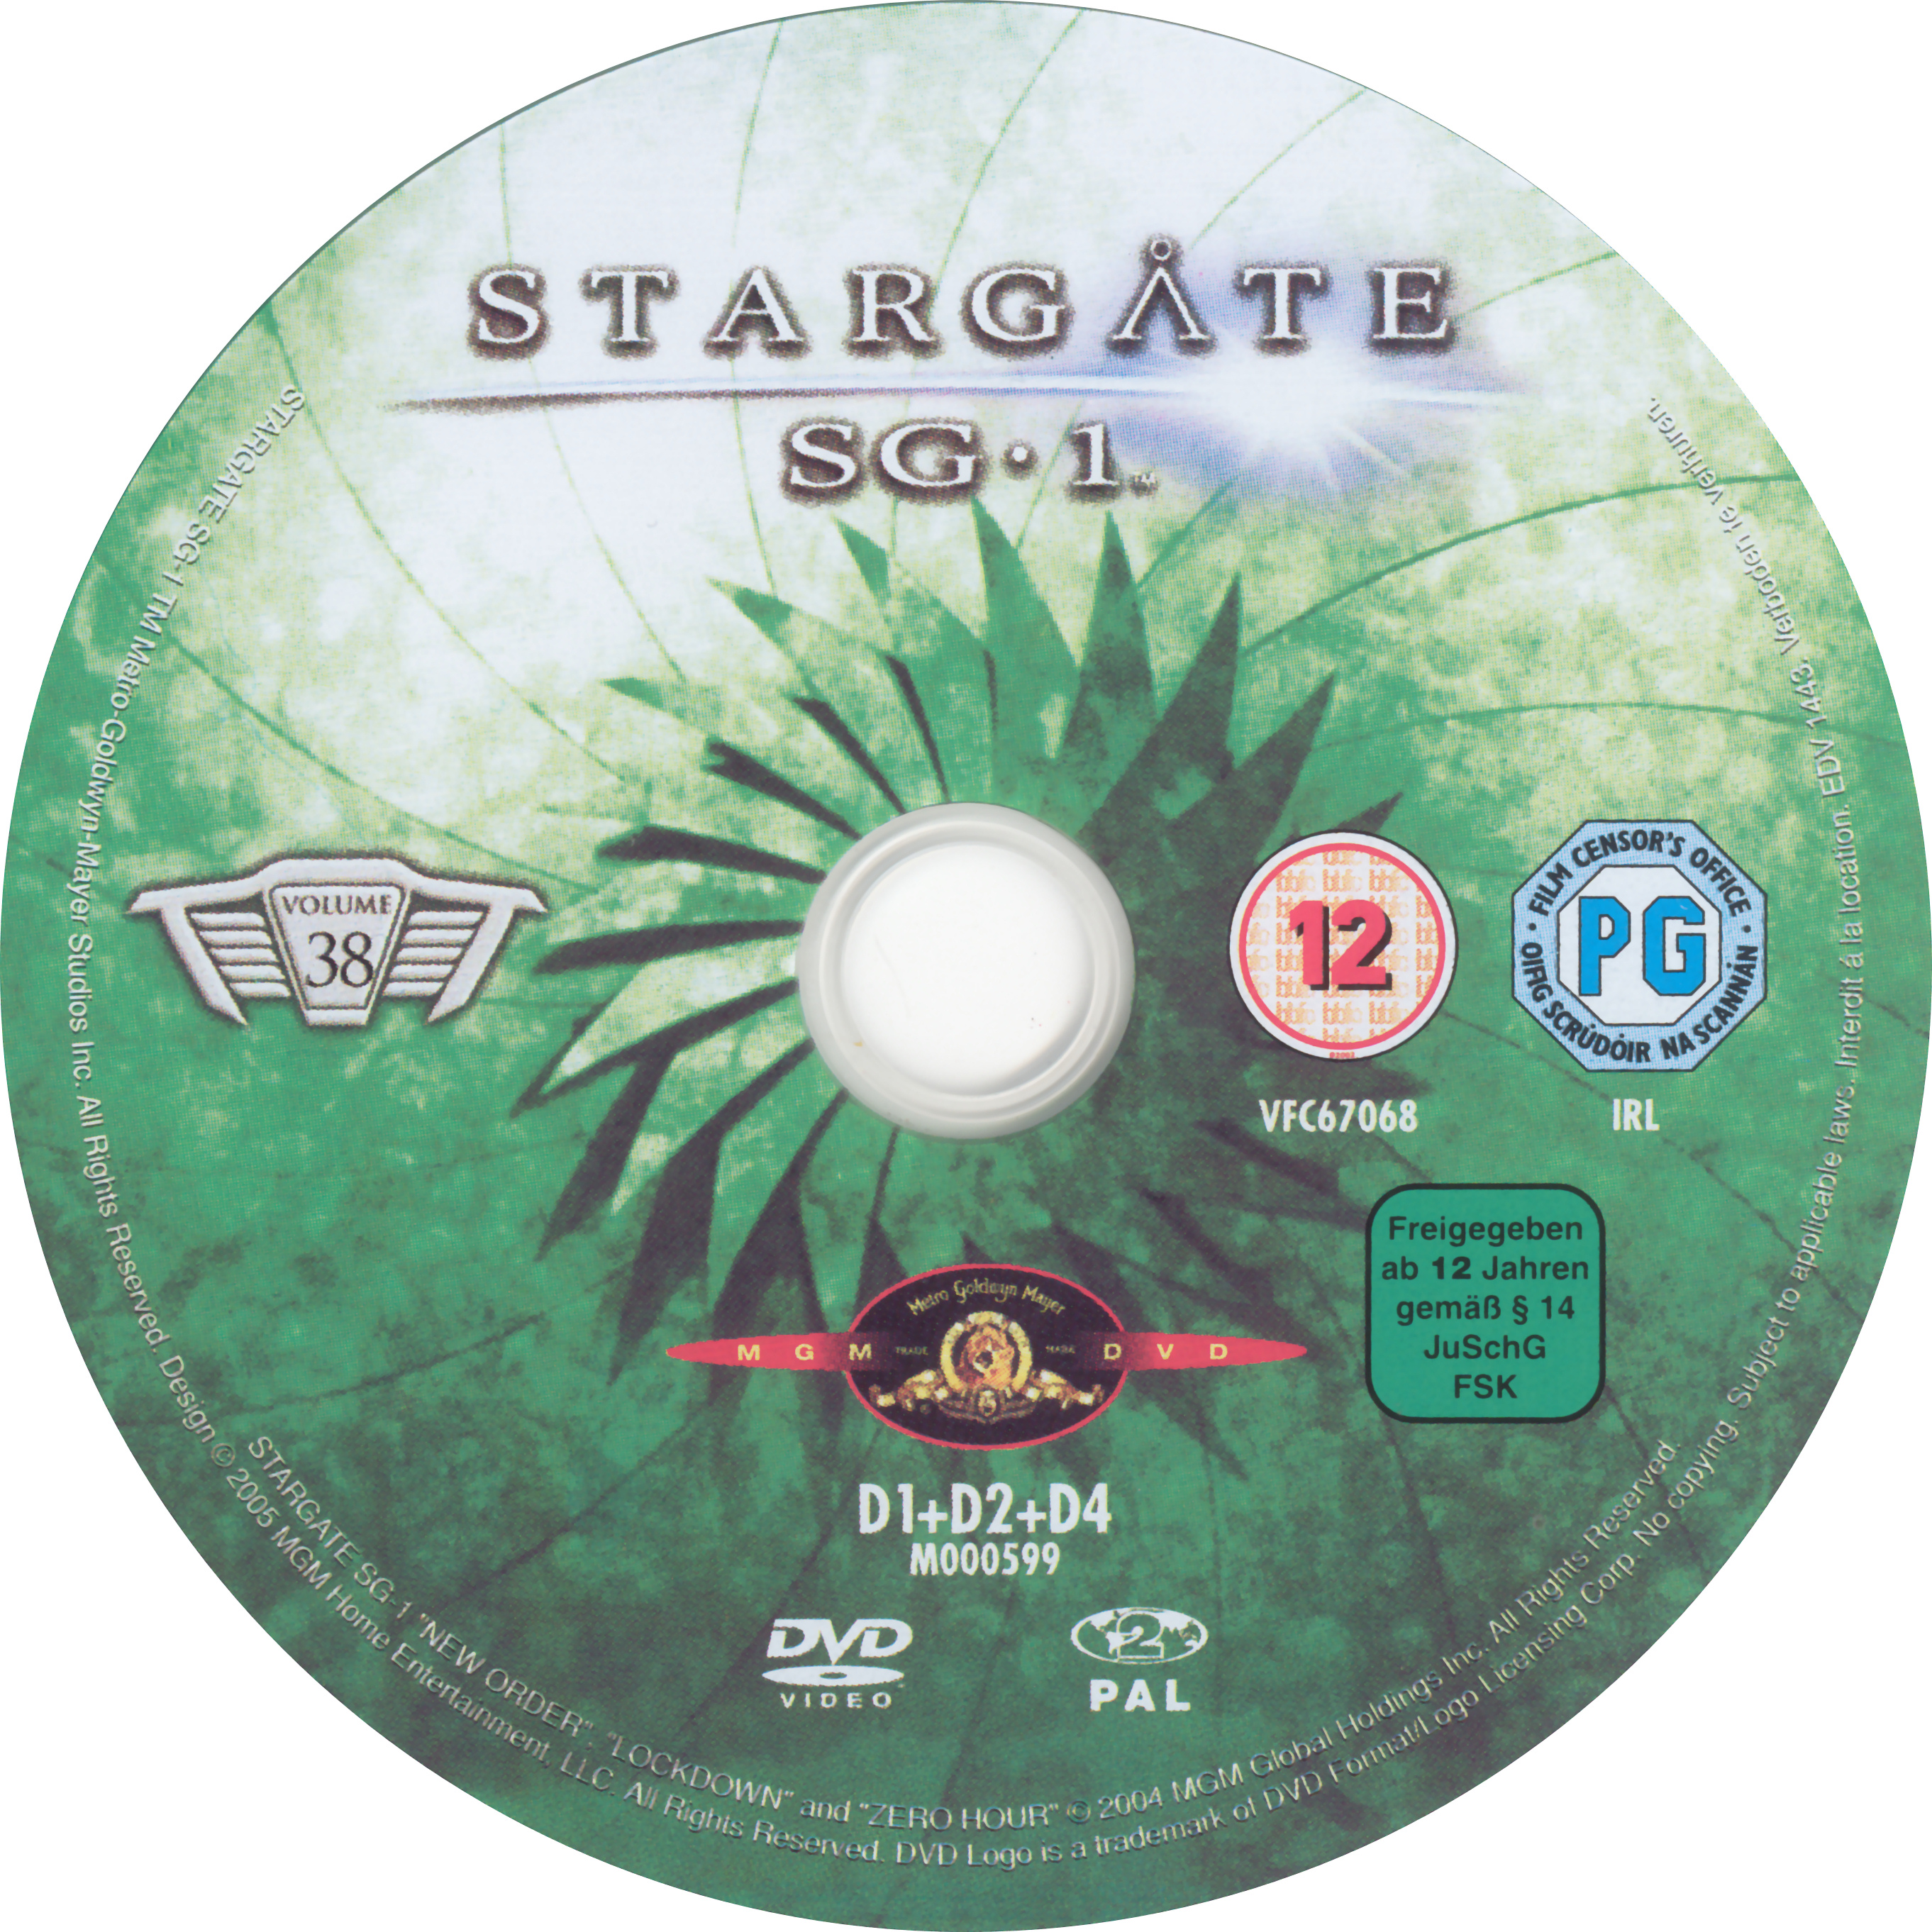 Stargate SG1 vol 38